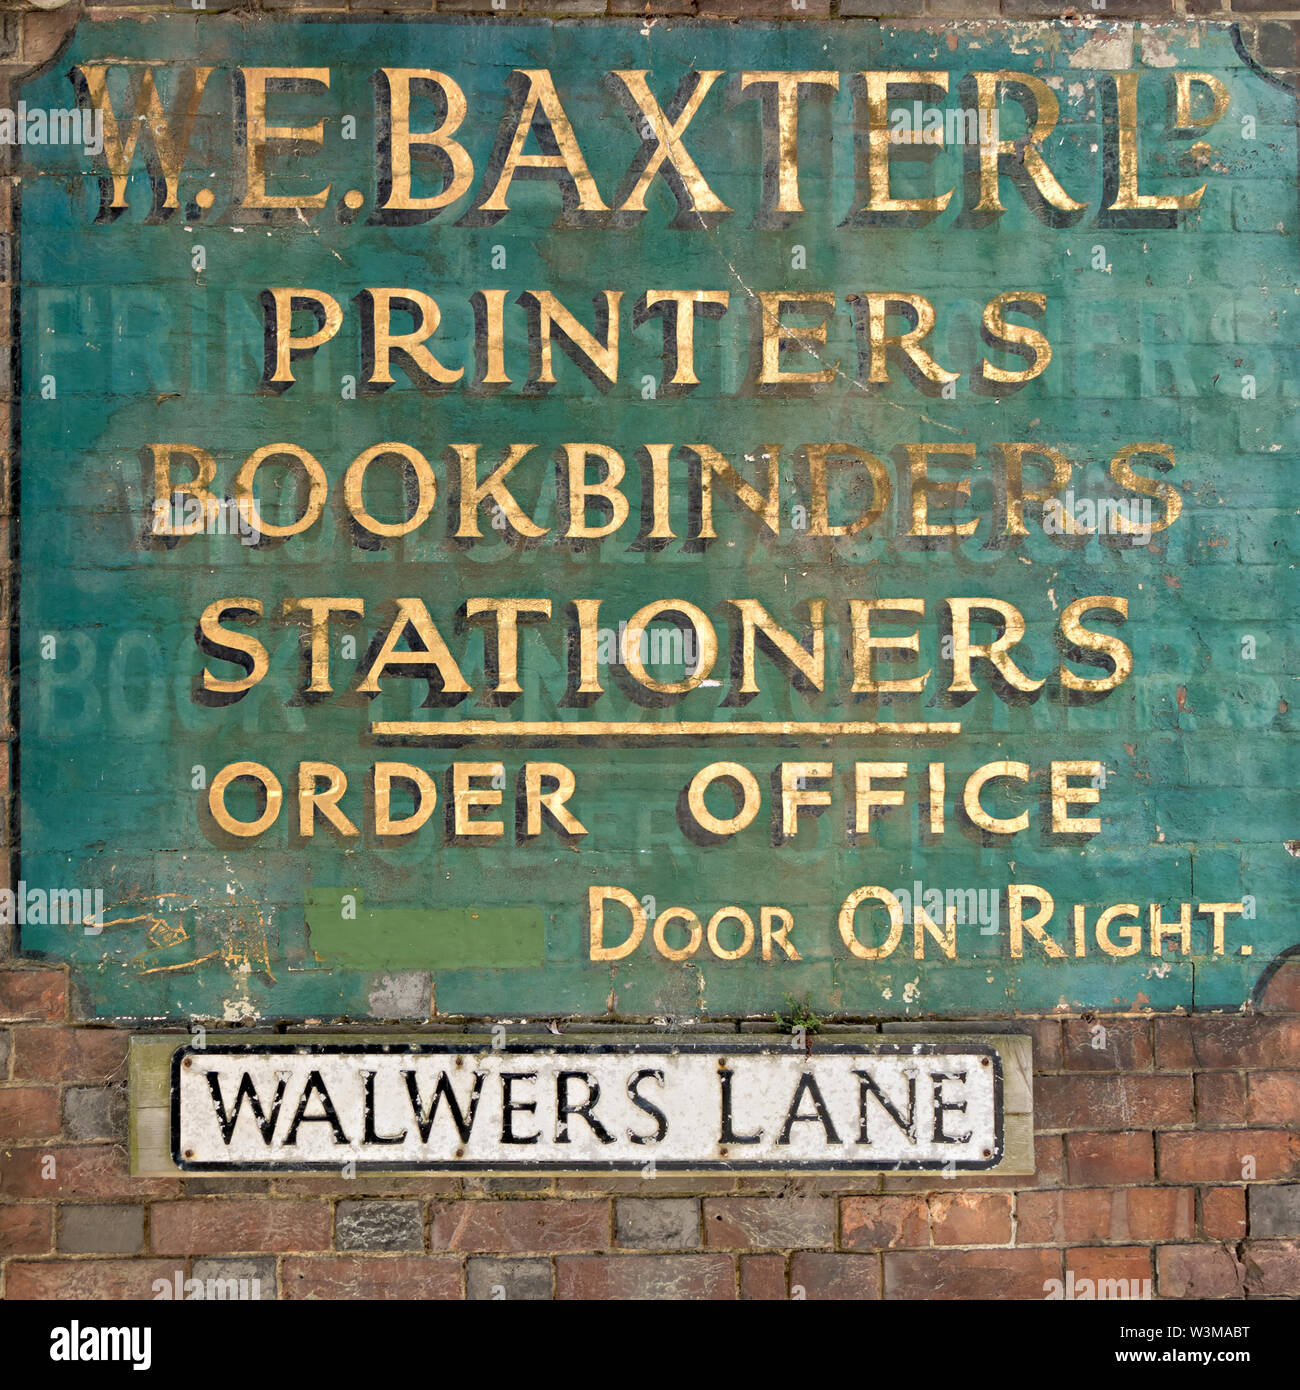 Ancienne peint W.E. Baxter Ltd. relieurs et fournitures de la boutique sign avec lettrage or décolorées sur mur de brique Walwers Lane, Lewes, East Sussex, UK Banque D'Images